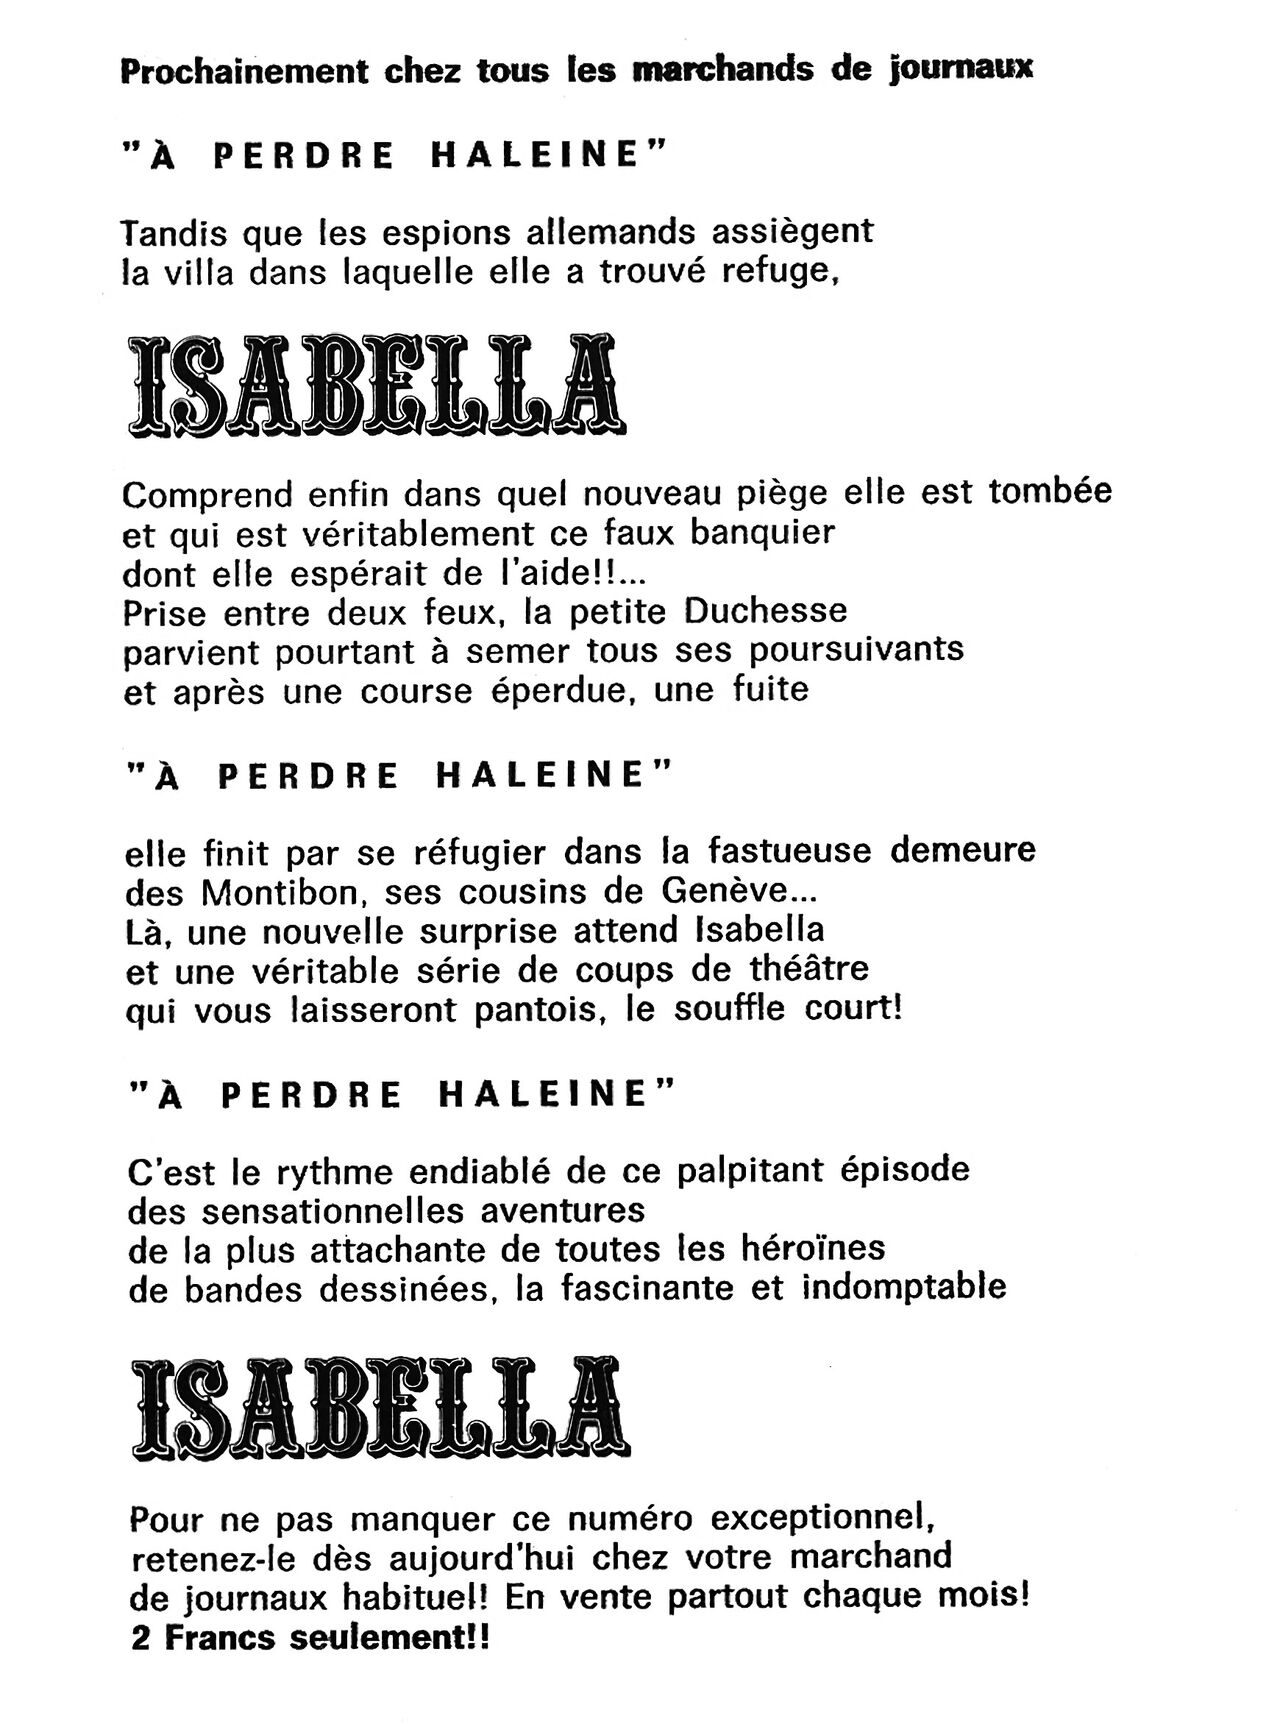 Isabella 048 - Lombre noire numero d'image 122